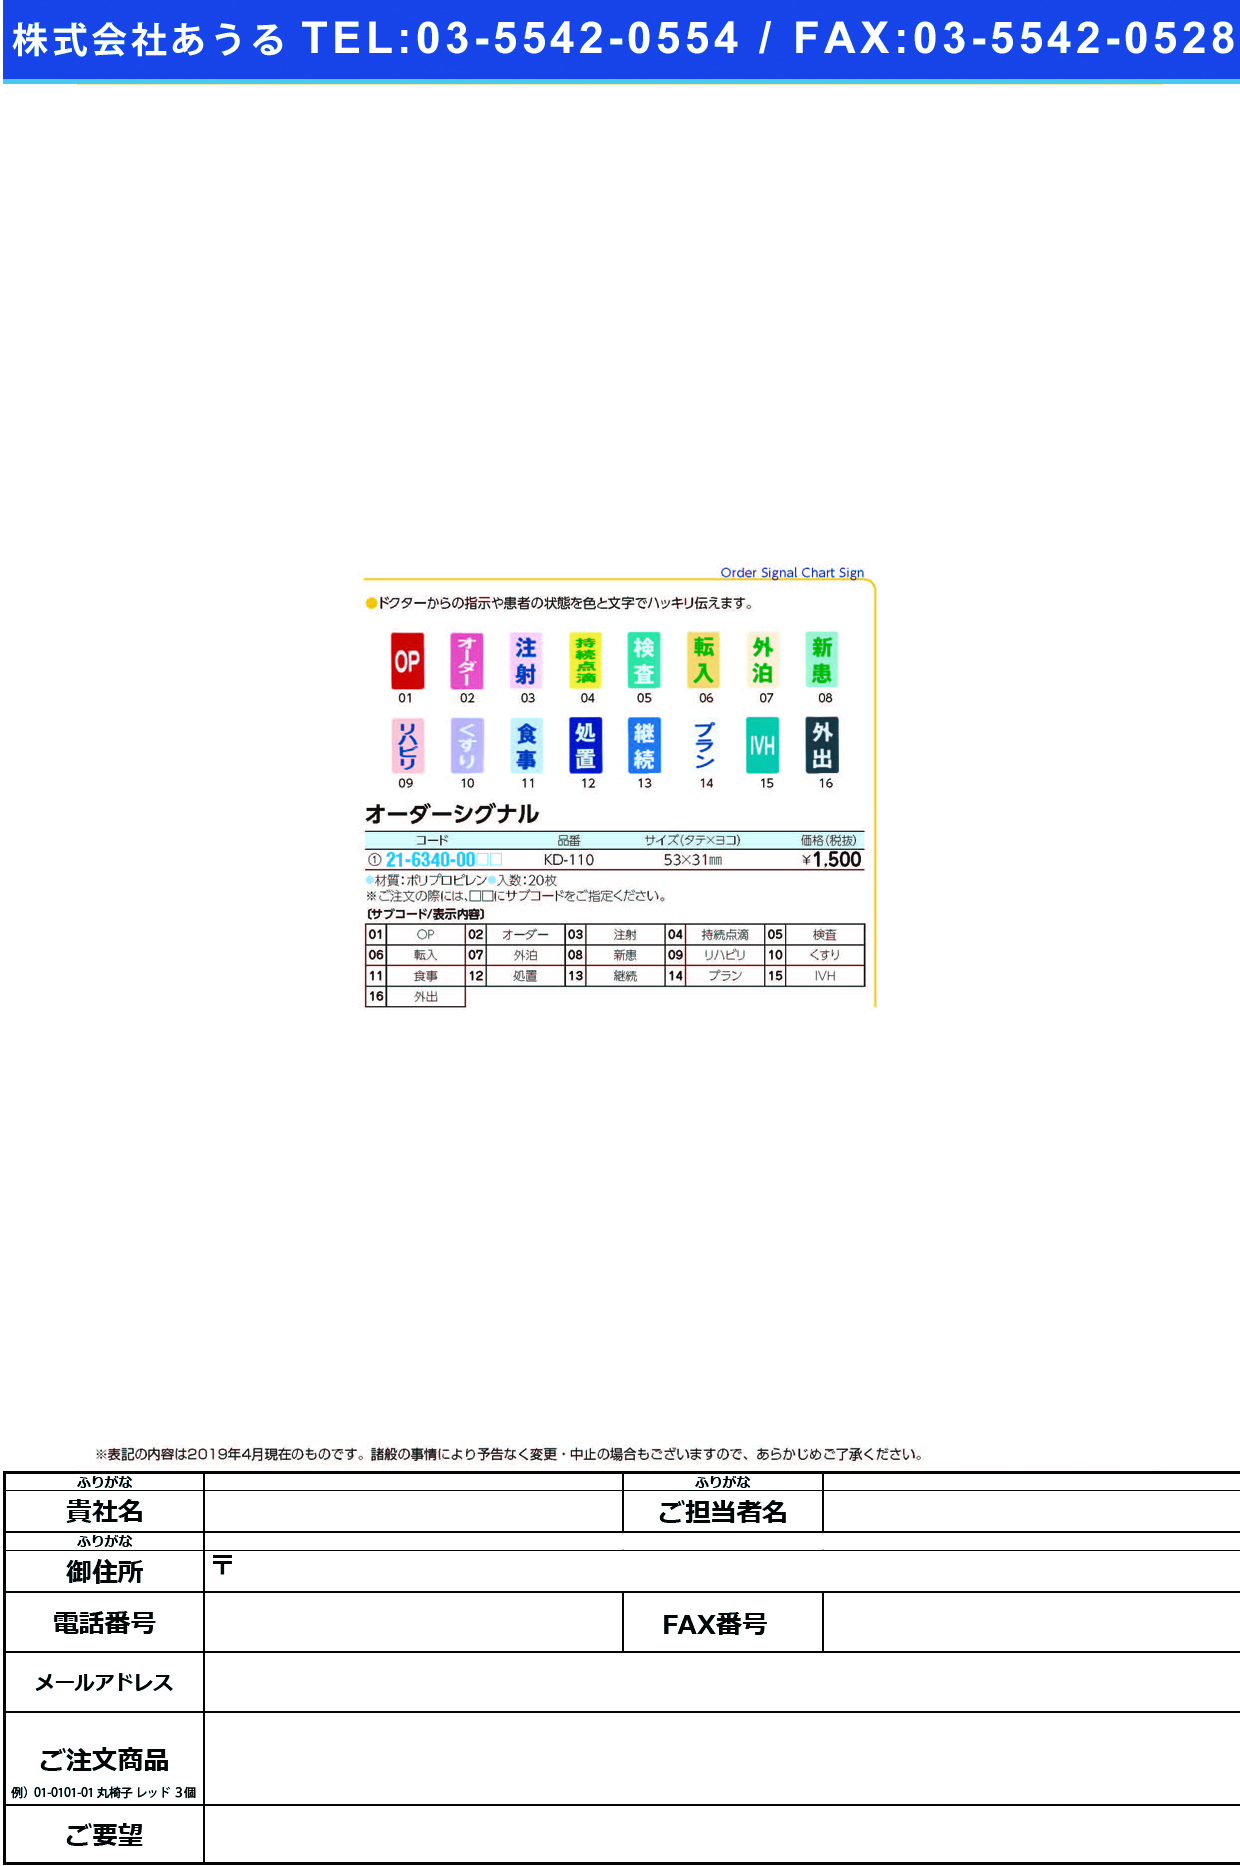 (21-6340-00)オーダーシグナル KD-110(20ﾏｲｲﾘ) ｵｰﾀﾞｰｼｸﾞﾅﾙ 食事(ケルン)【1袋単位】【2019年カタログ商品】